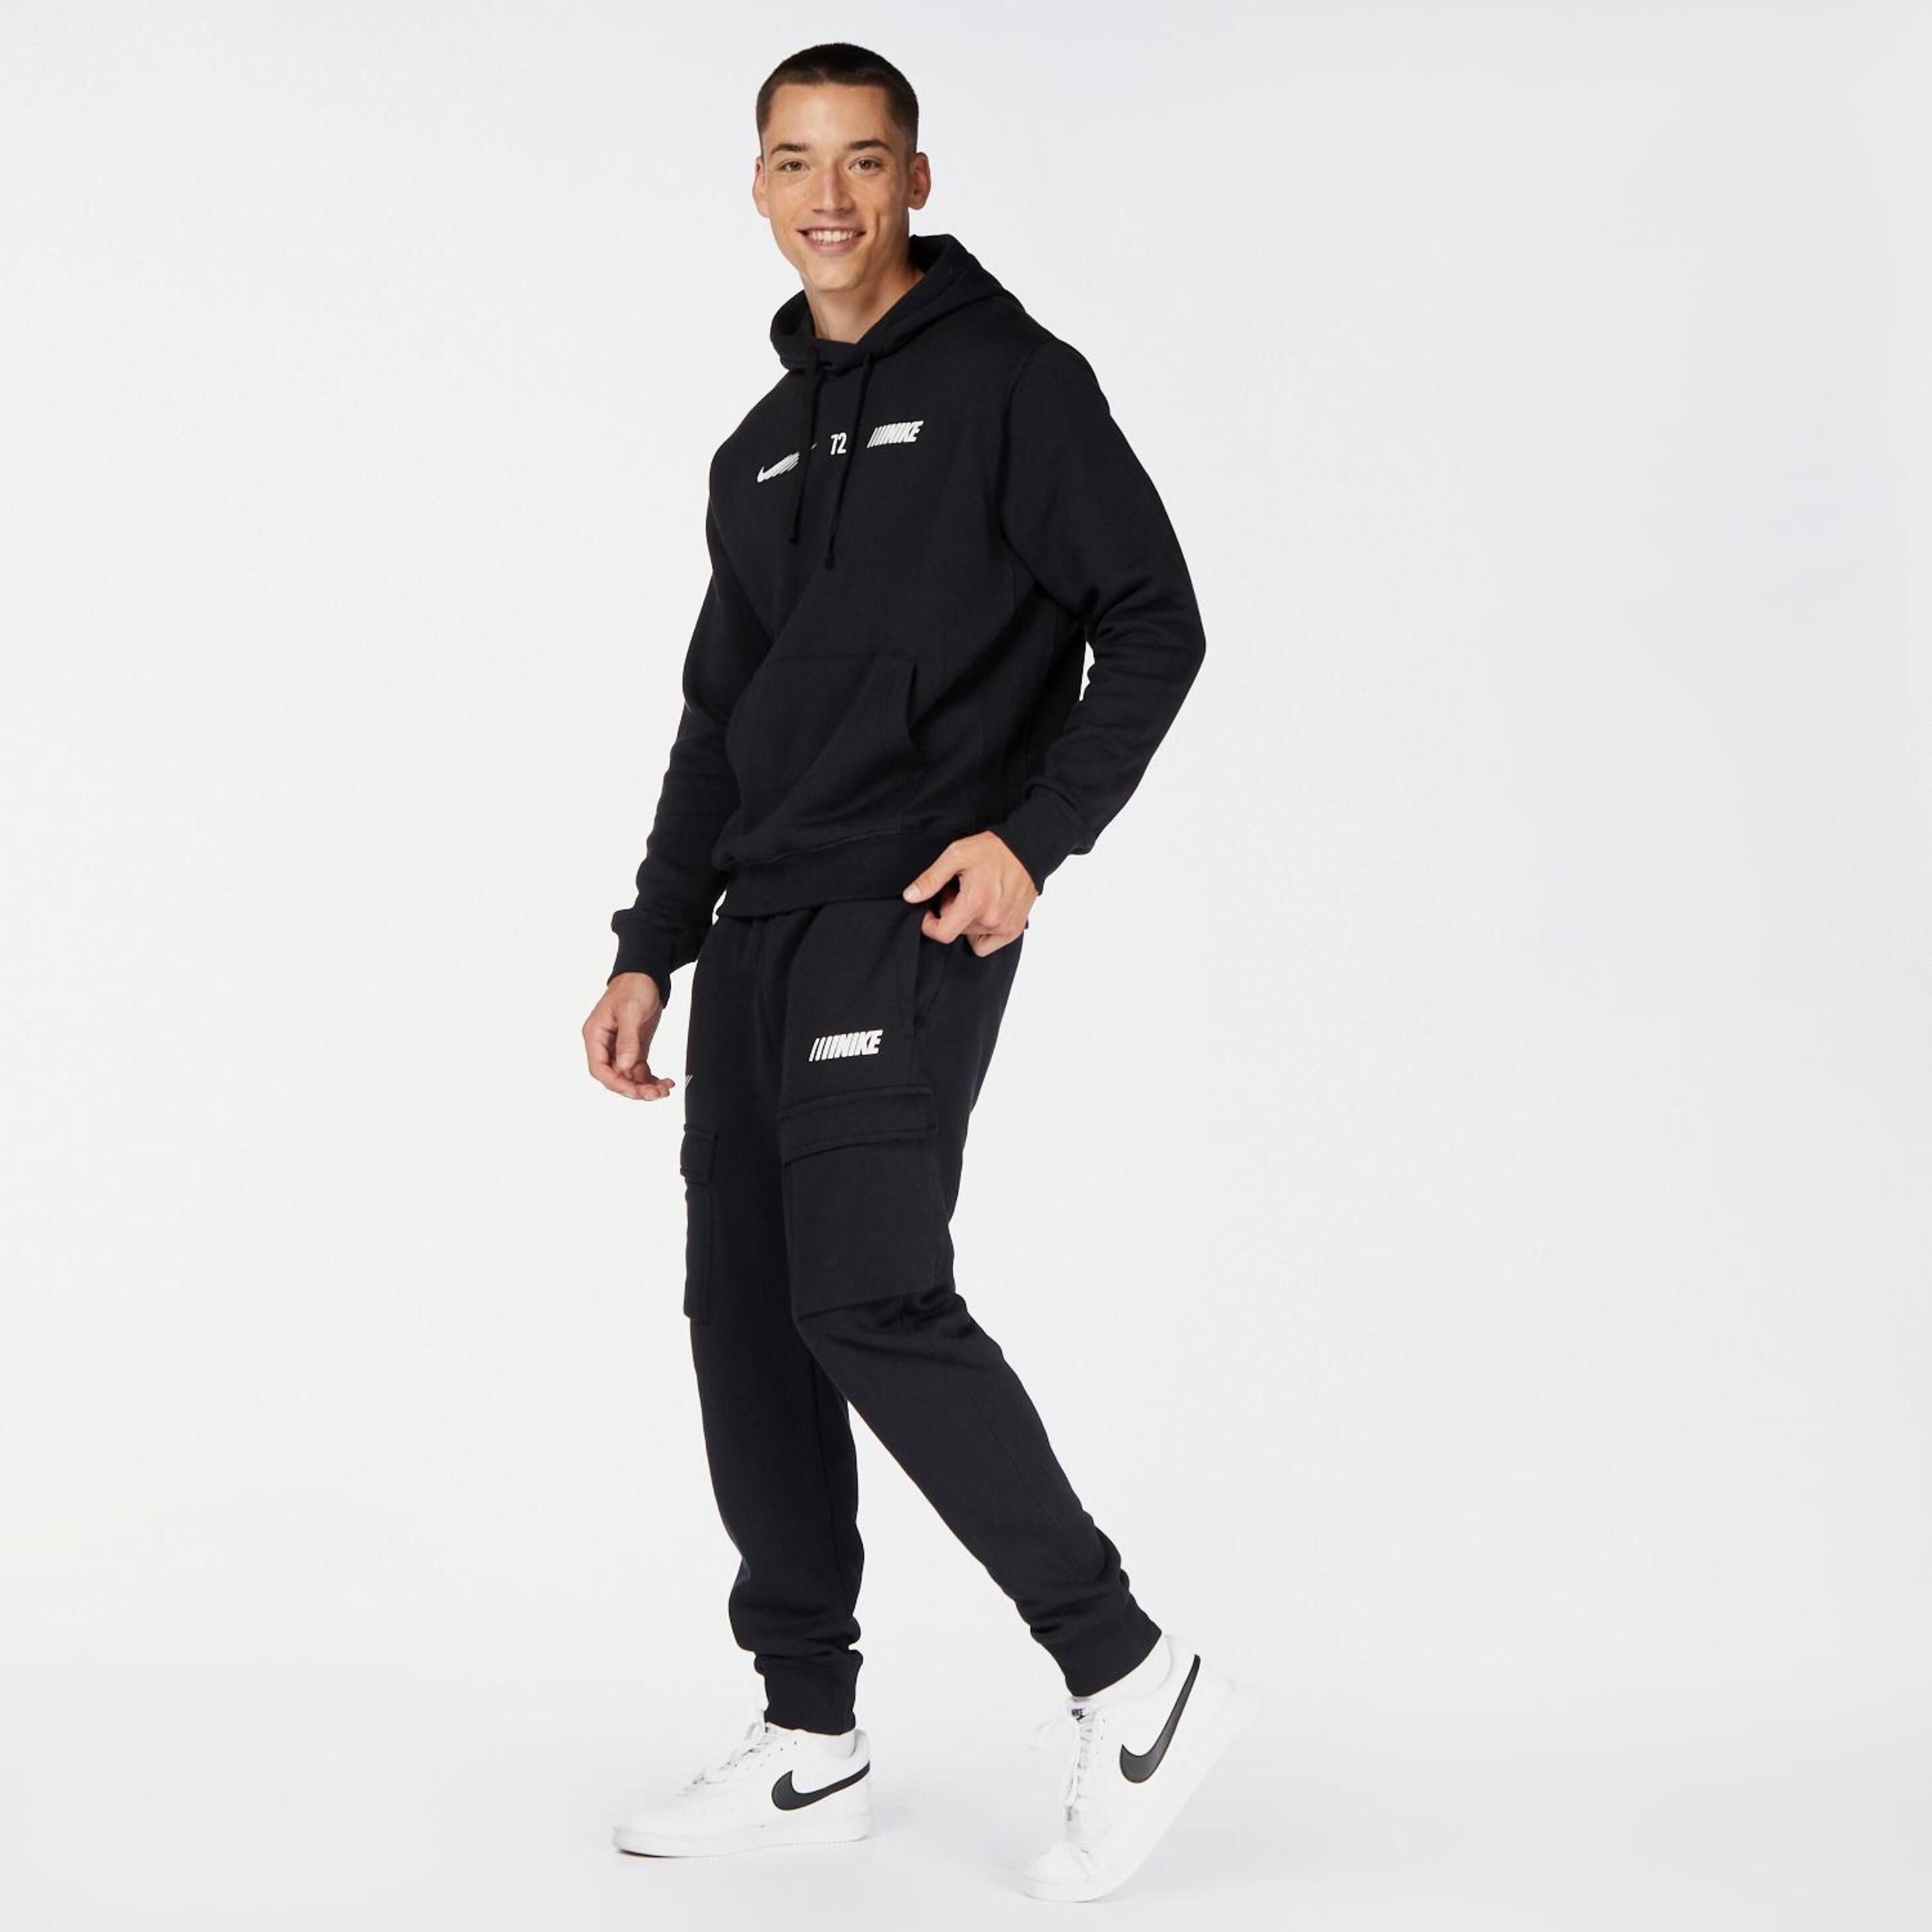 Nike 72 - Negro - Pantalón Chándal Hombre